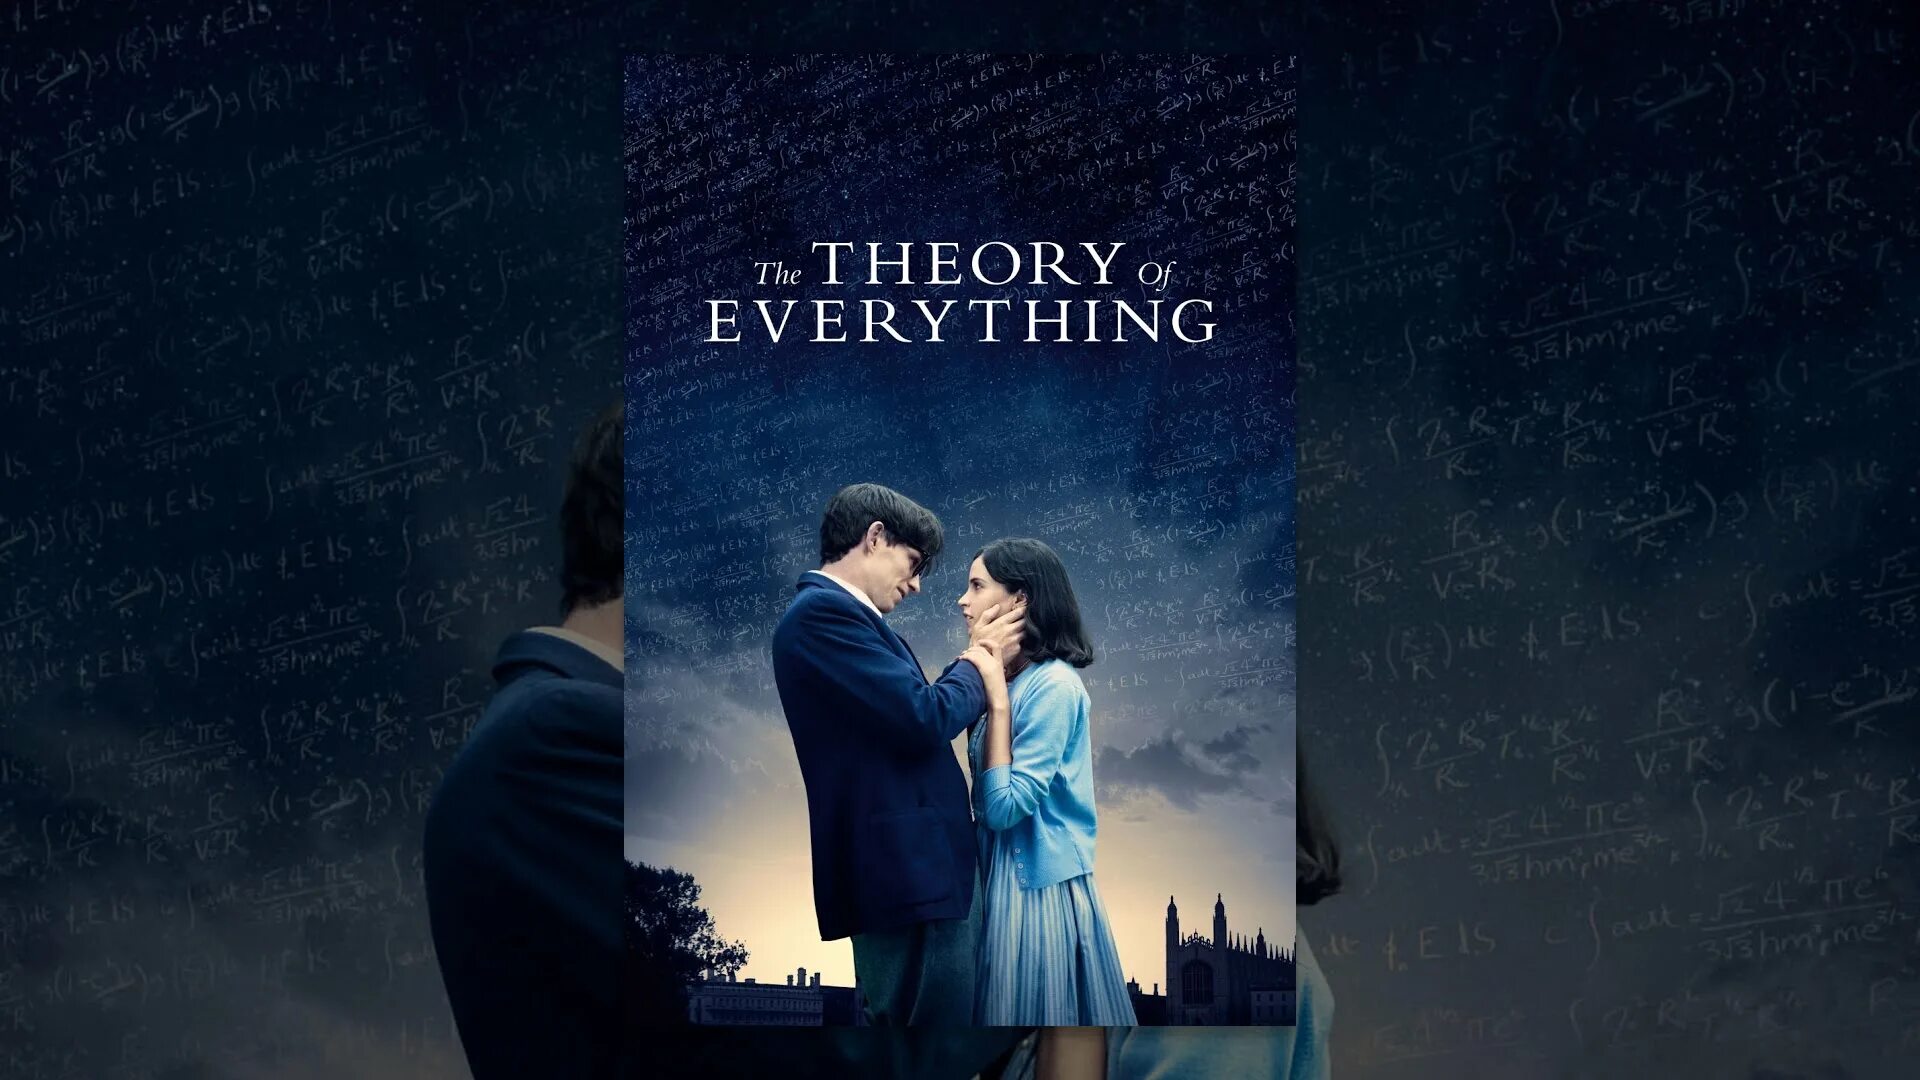 Theory of everything. Theory of everything ютуб. Theory of everything игра. Theory of everything GD.